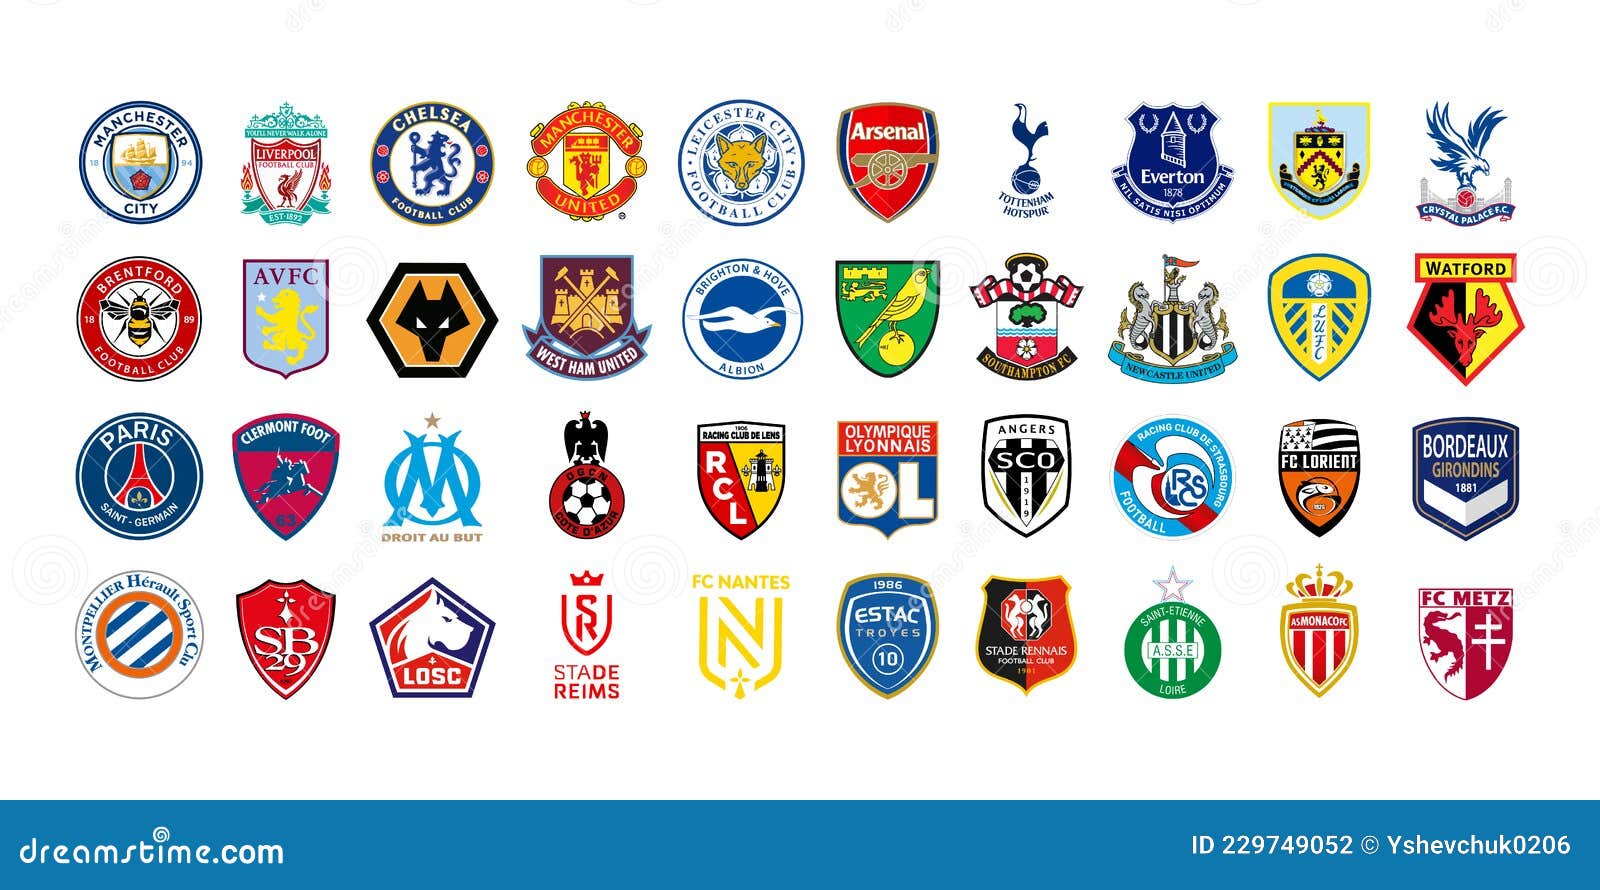 Clubes De Fútbol De Inglaterra. Liga Inglesa De Categoría 20212022. Liga 1. Liga Profesional Francesa. Kyiv 12 De Fotografía editorial - Ilustración de lente: 229749052